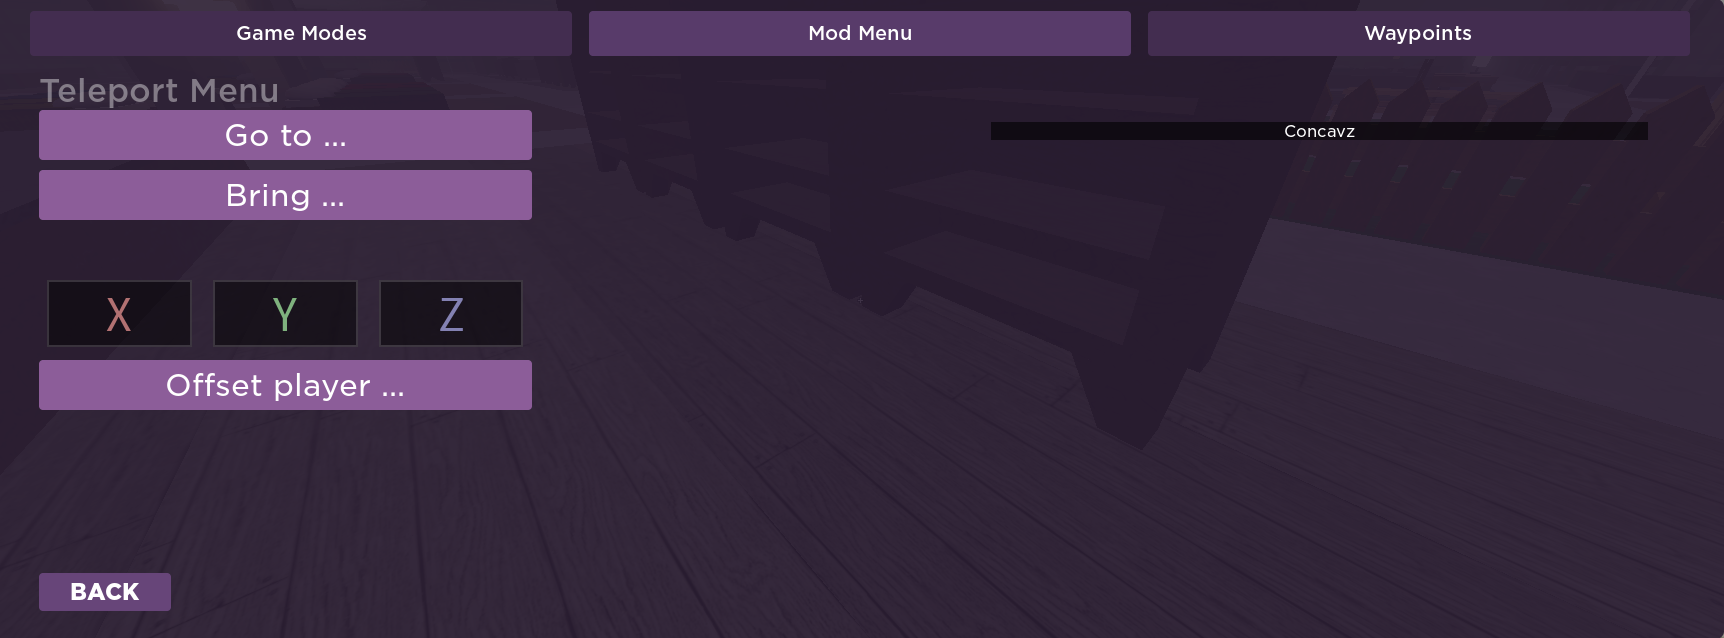 como instalar mod menu para roblox 